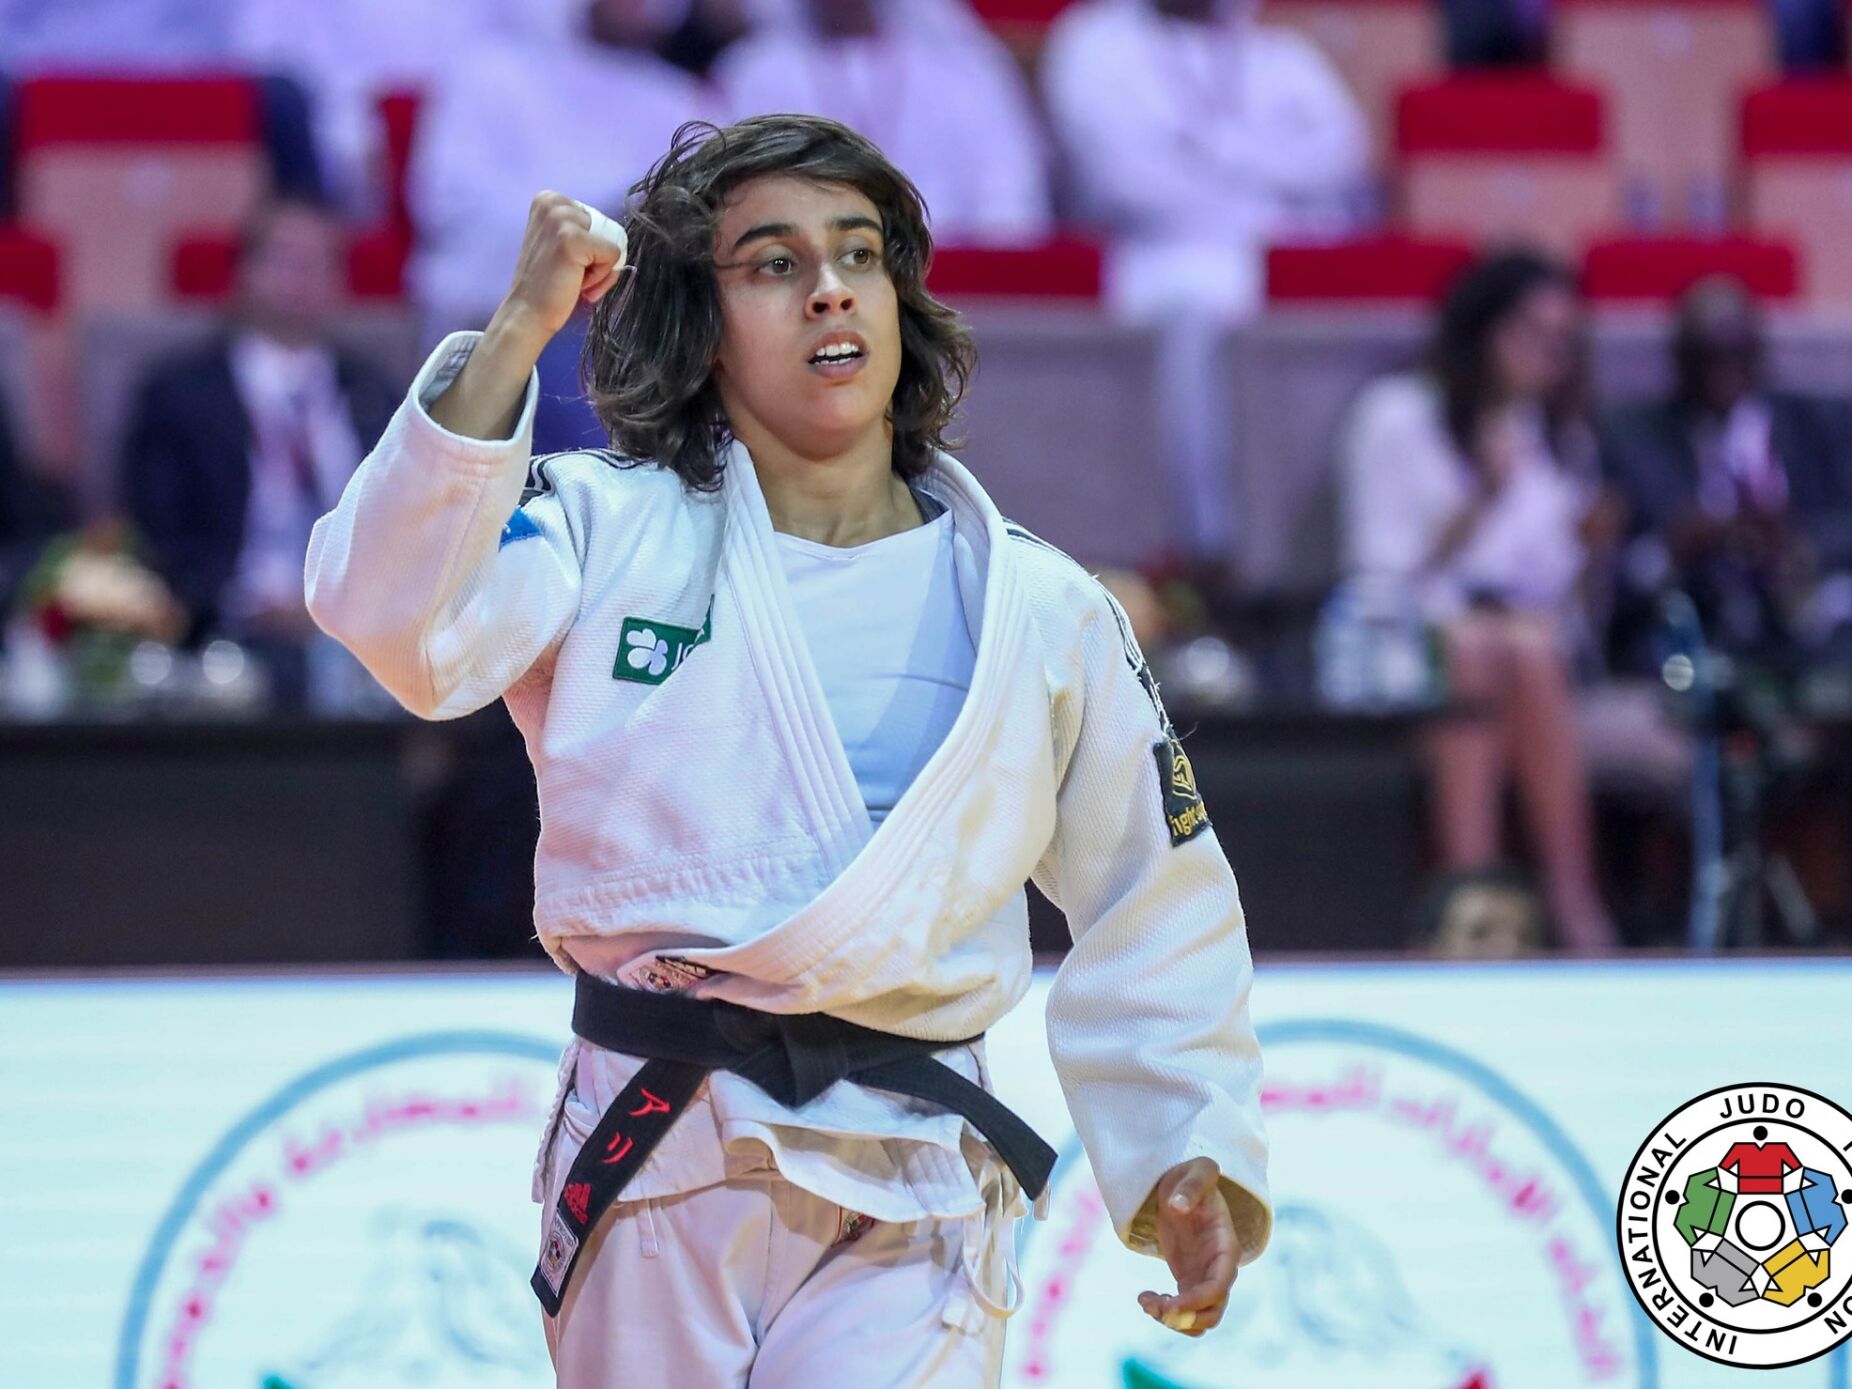 “Bronze que sabe a ouro”. Catarina Costa conquista medalha após superar duas lesões em 5 meses